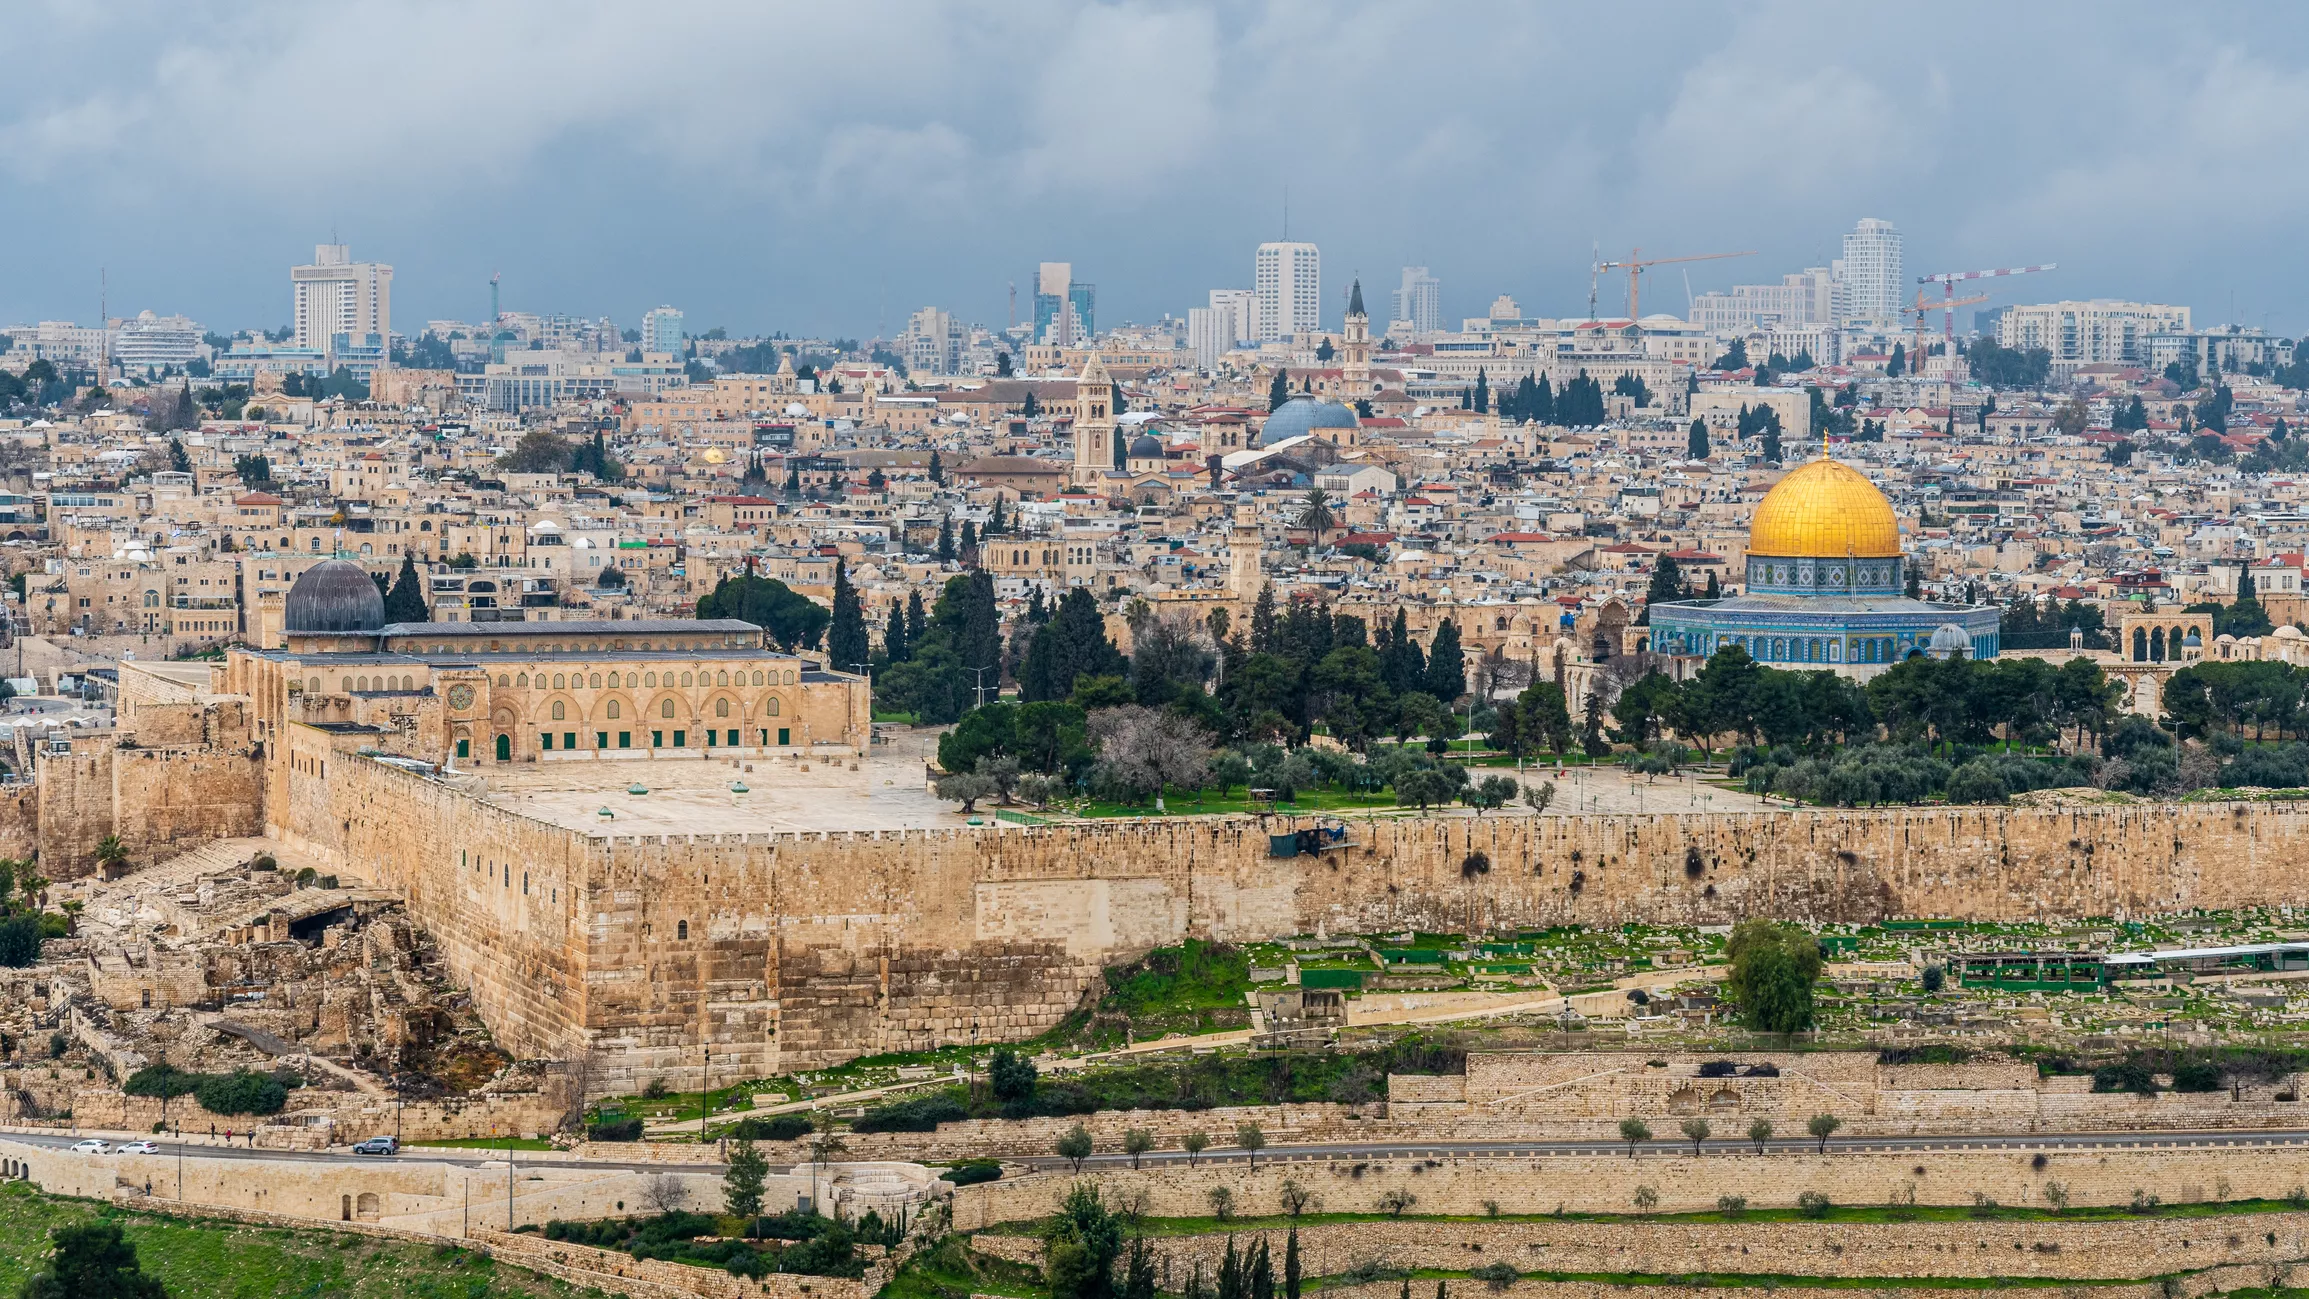 En l'època de Jesucrist, Jerusalem es trobava sota una doble autoritat: d'una banda la del prefecte romà, Pilat, i d'una altra la del summe sacerdot, Caifas